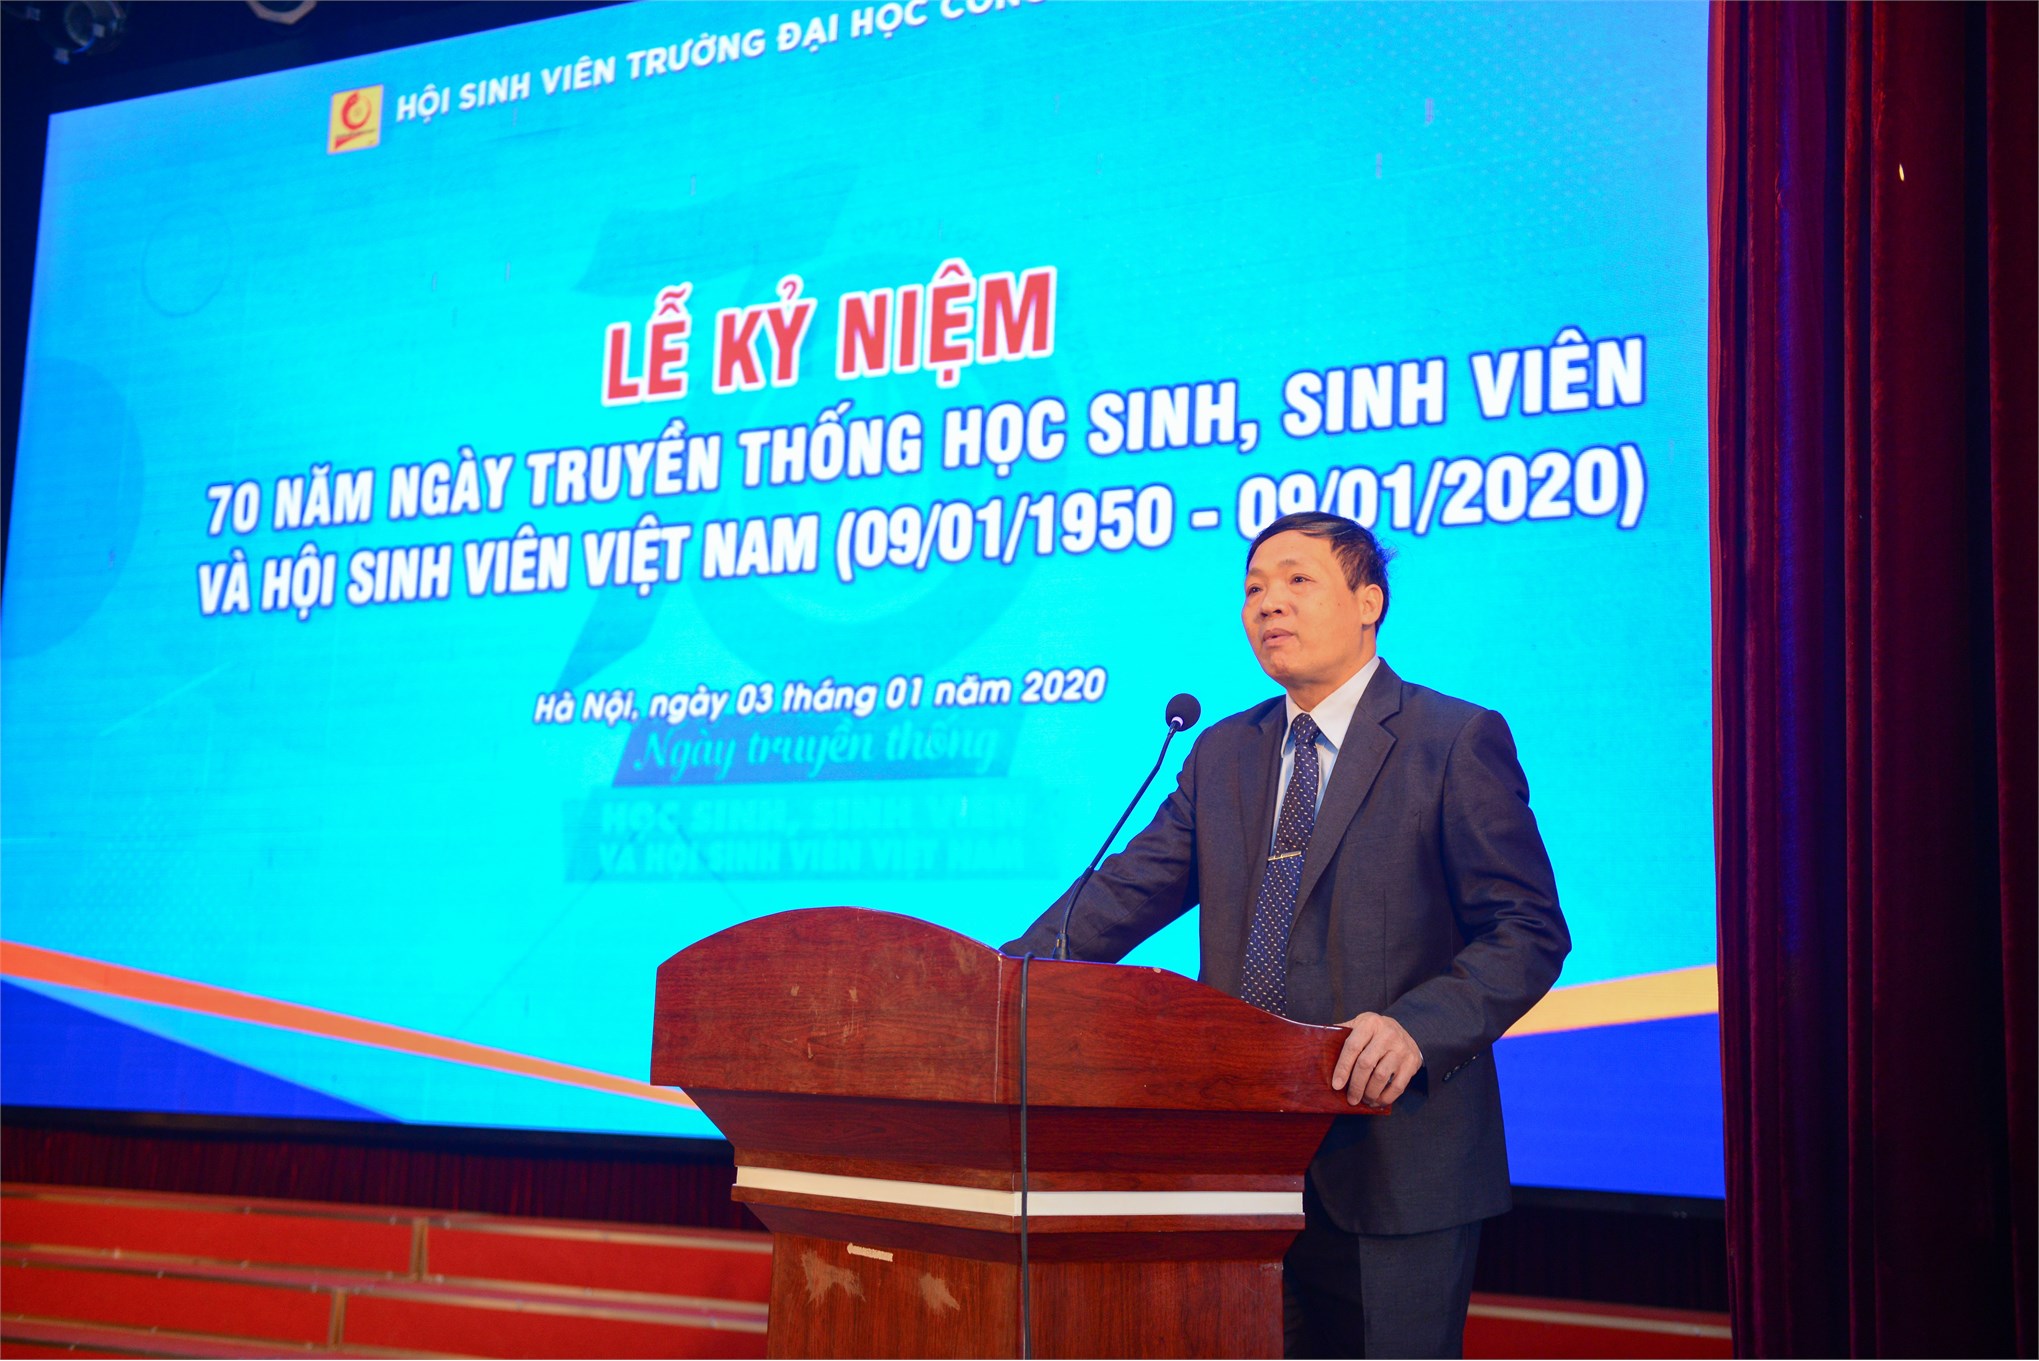 Kỷ niệm 70 năm ngày truyền thống Học sinh Sinh viên và Hội sinh viên Việt Nam (09/01/1950 - 09/01/2020)